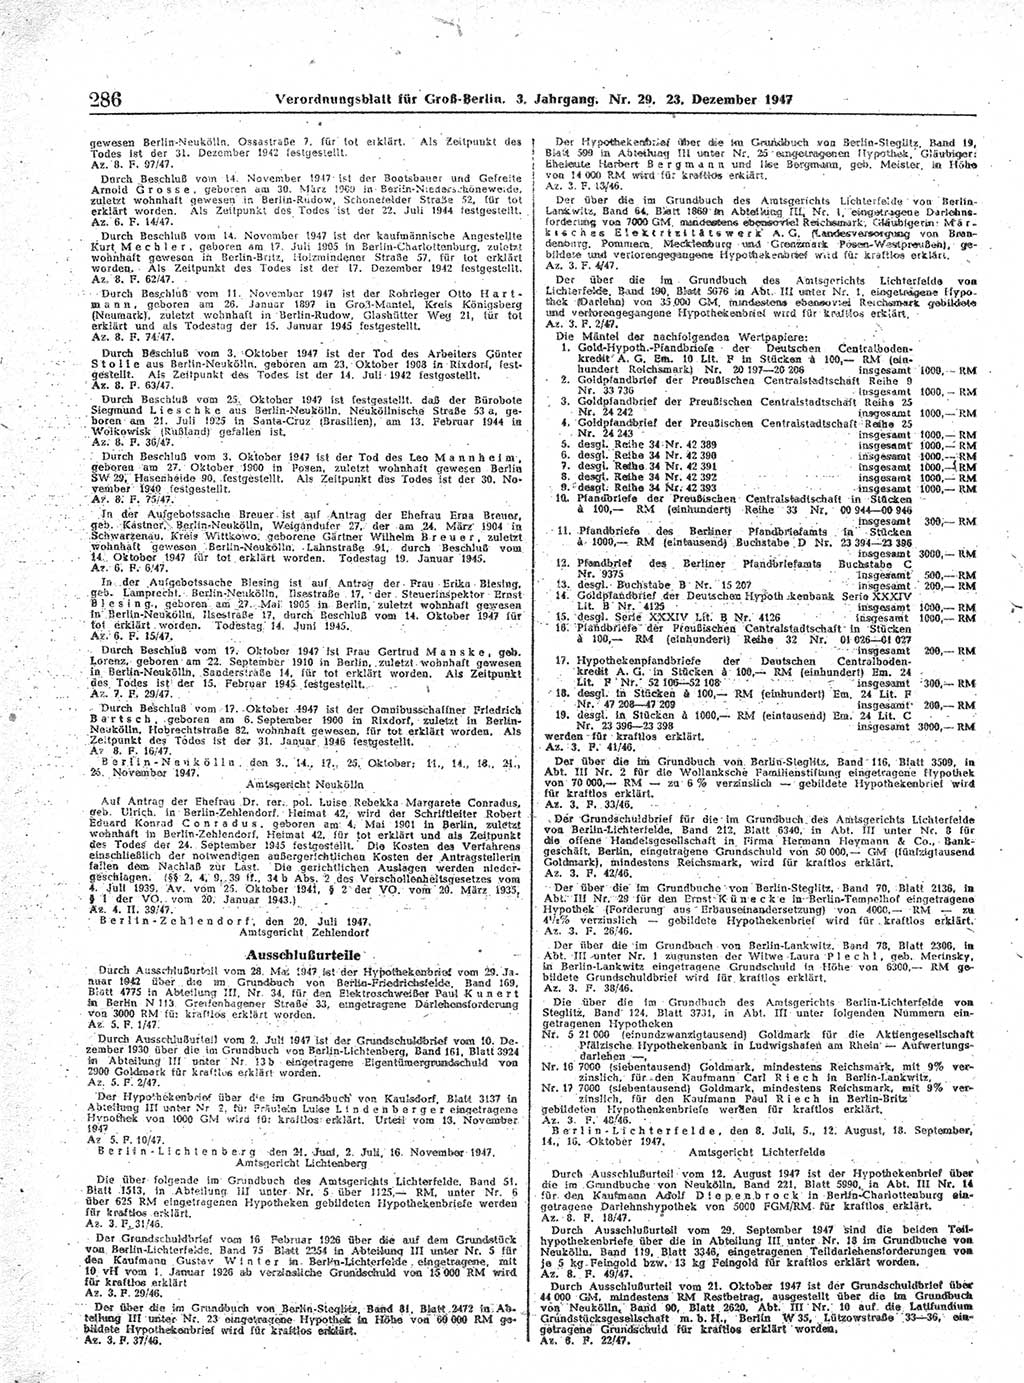 Verordnungsblatt (VOBl.) für Groß-Berlin 1947, Seite 286 (VOBl. Bln. 1947, S. 286)